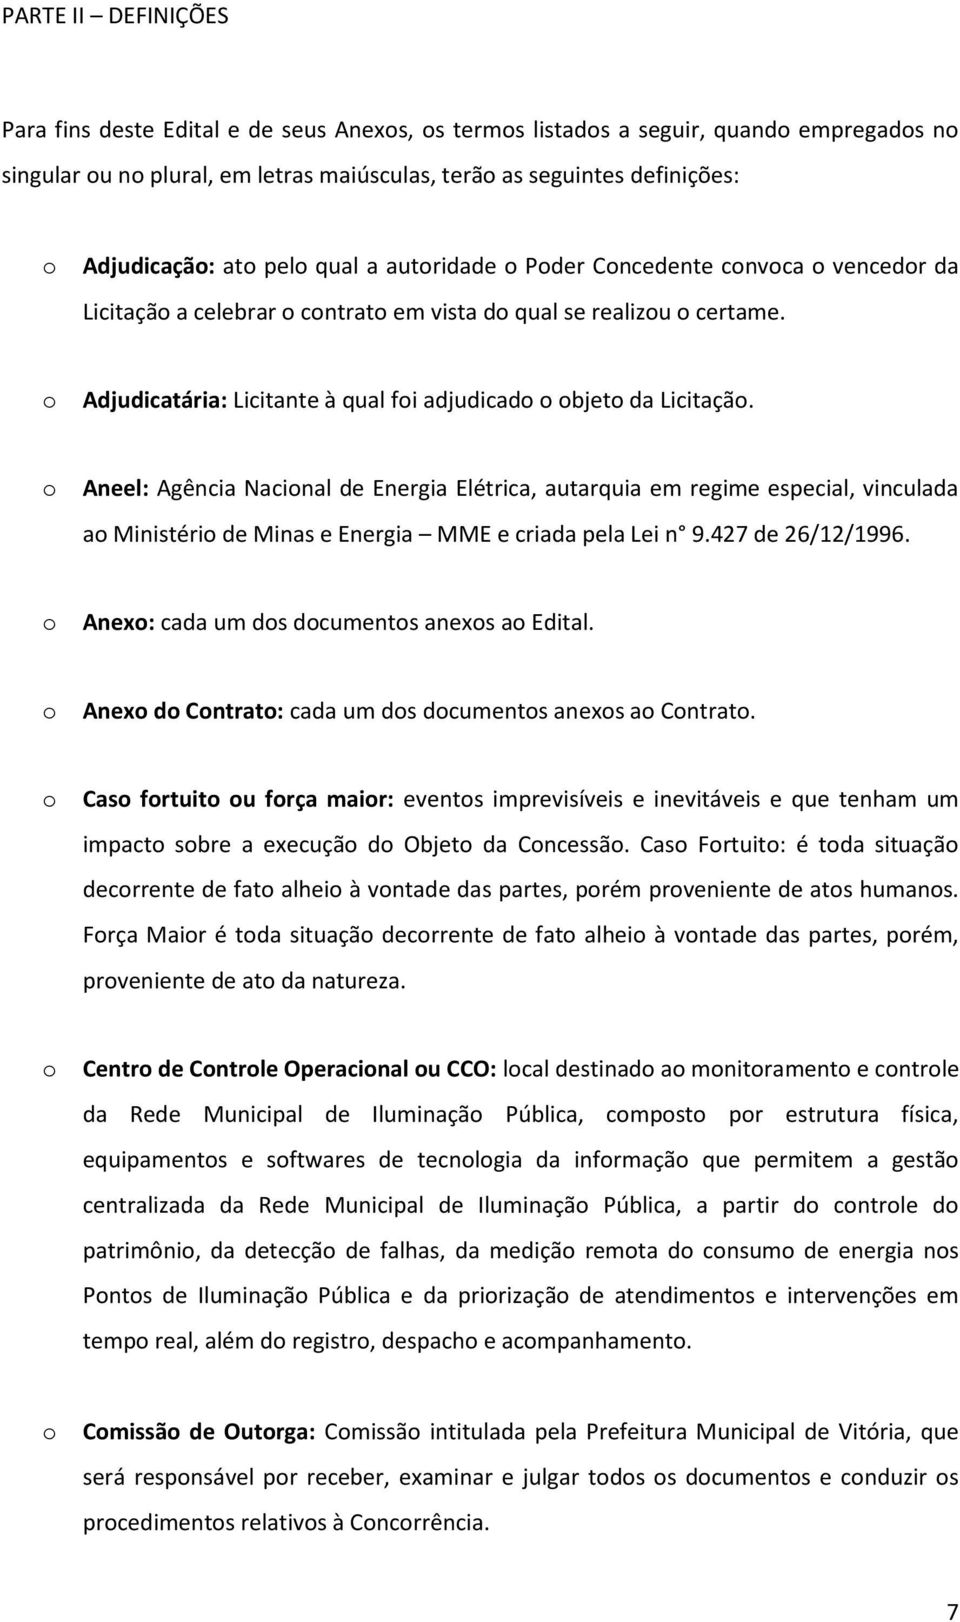 Aneel: Agência Nacinal de Energia Elétrica, autarquia em regime especial, vinculada a Ministéri de Minas e Energia MME e criada pela Lei n 9.427 de 26/12/1996.